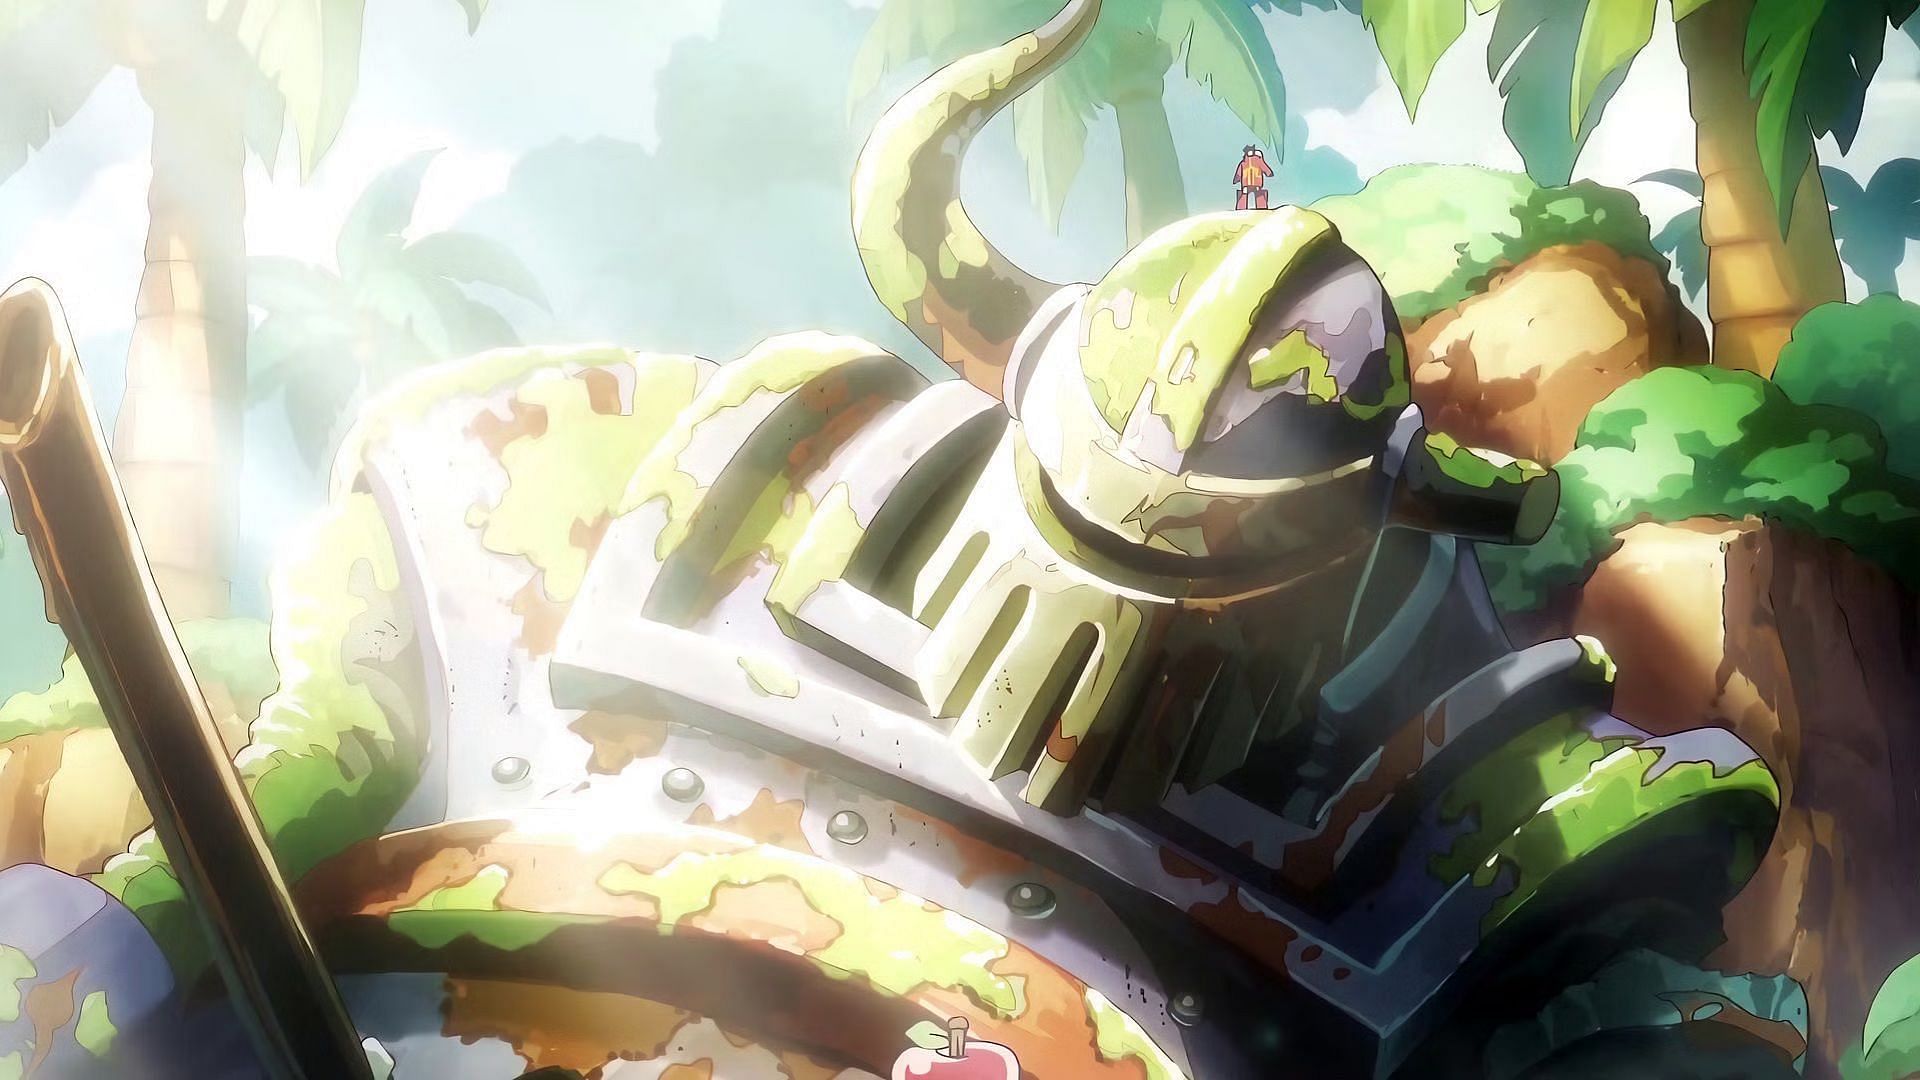 The Iron Giant (Image via Toei Animation)